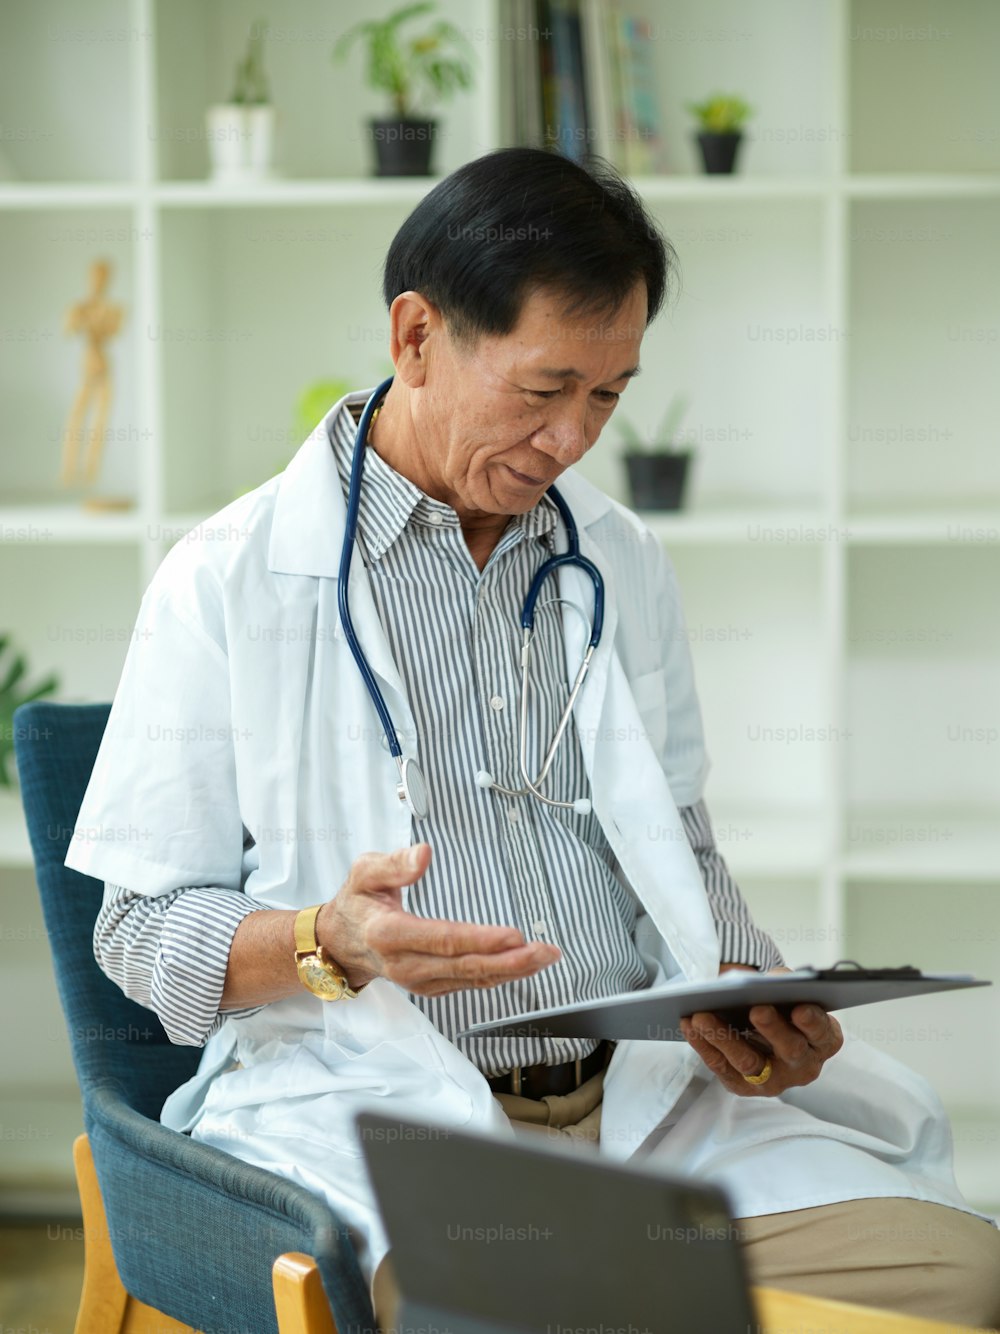 Um médico especialista em meia-idade verifica e lê um plano de tratamento para um paciente que foi ferido em uma prancheta médica.